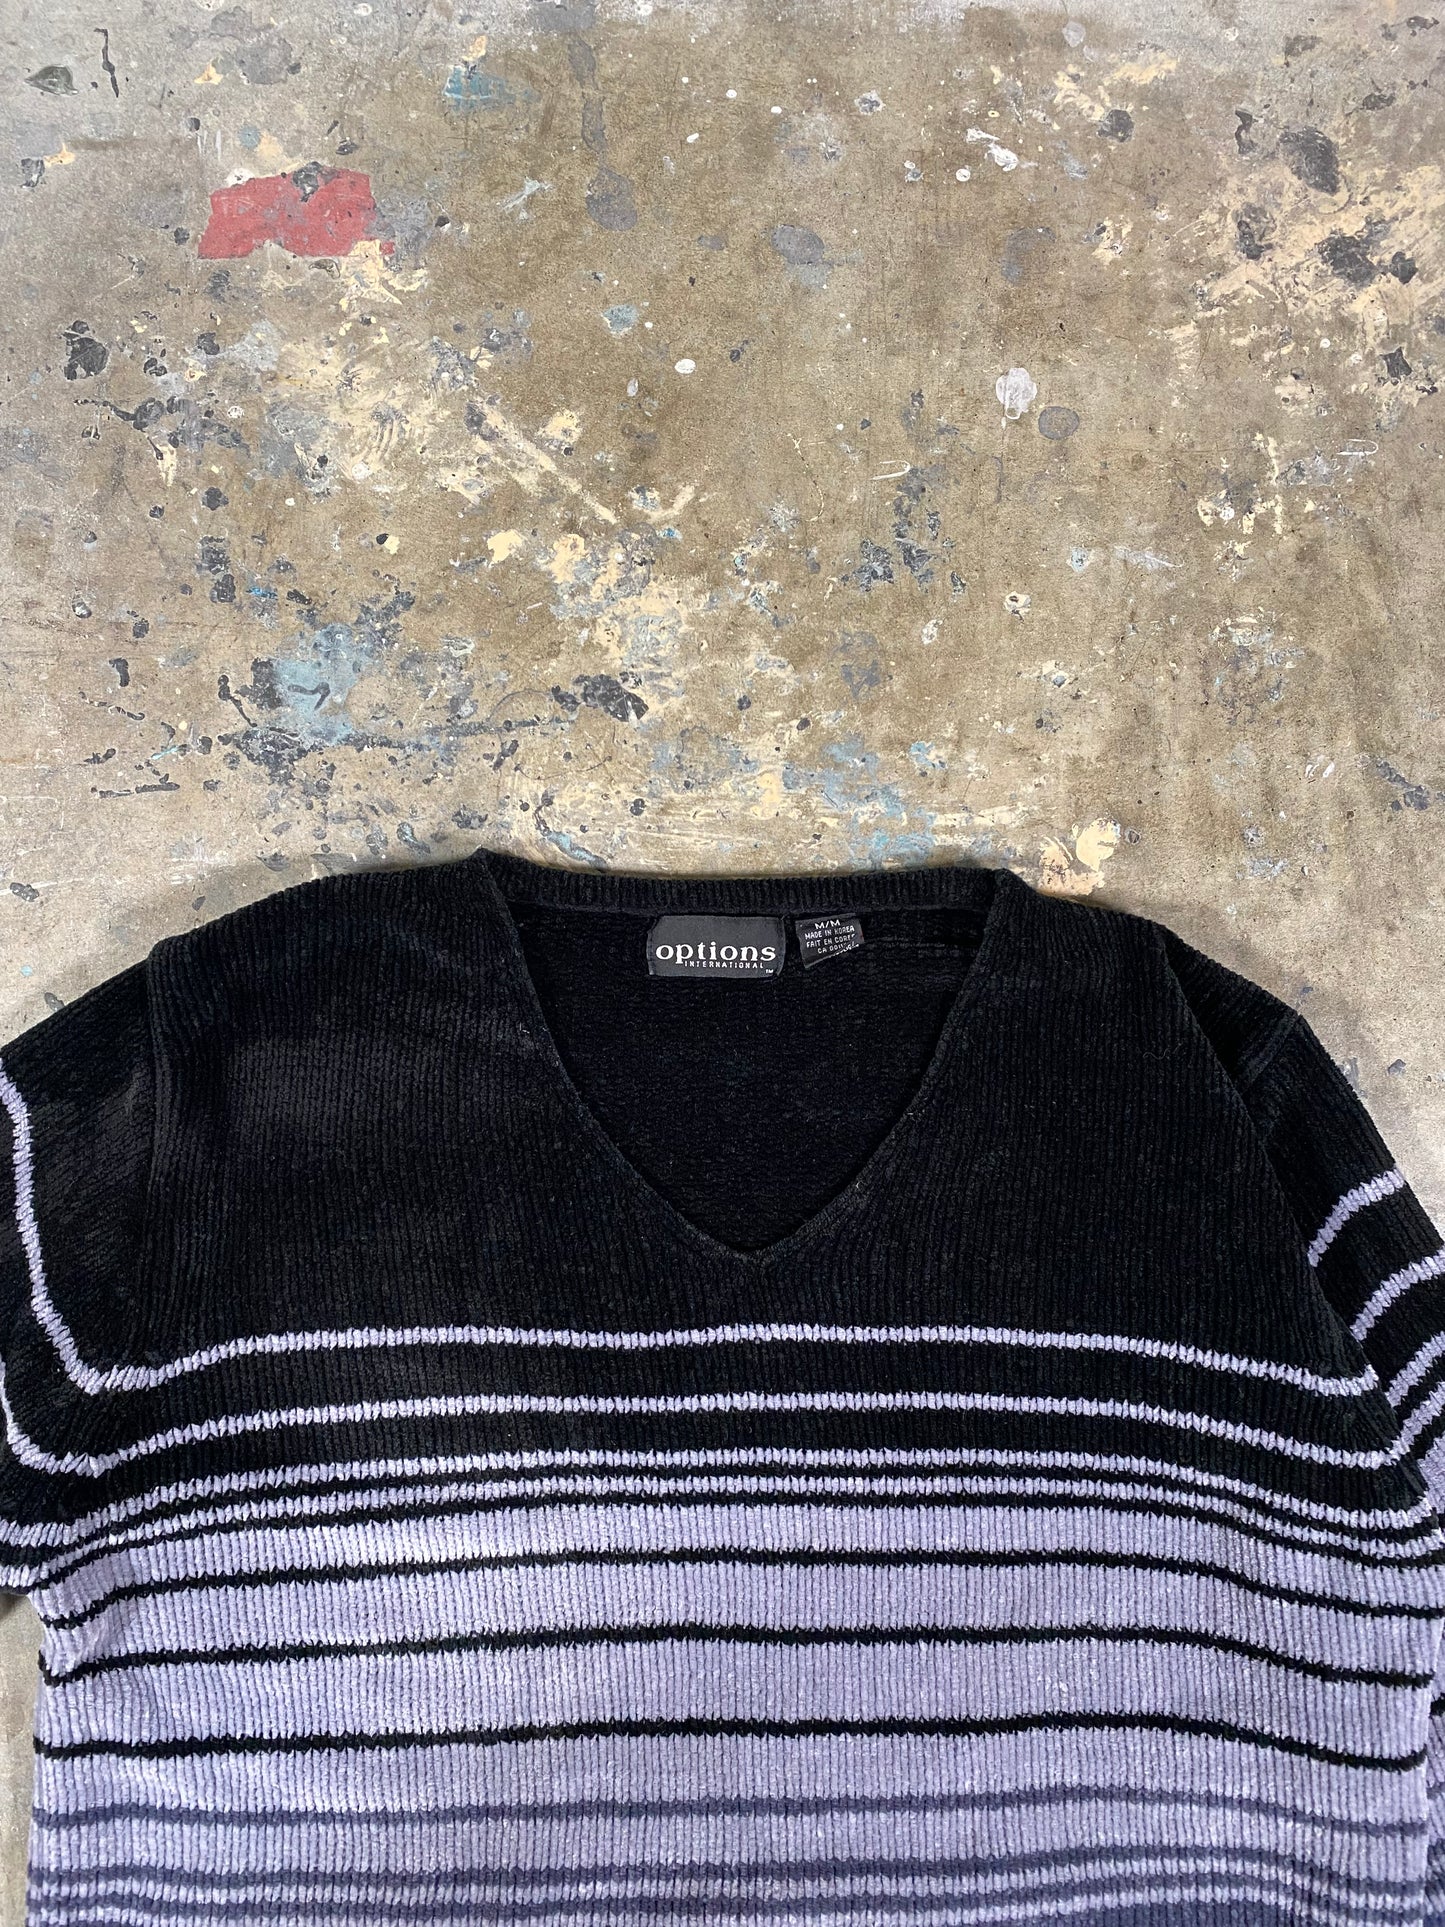 00s Velvet Sweater (M)